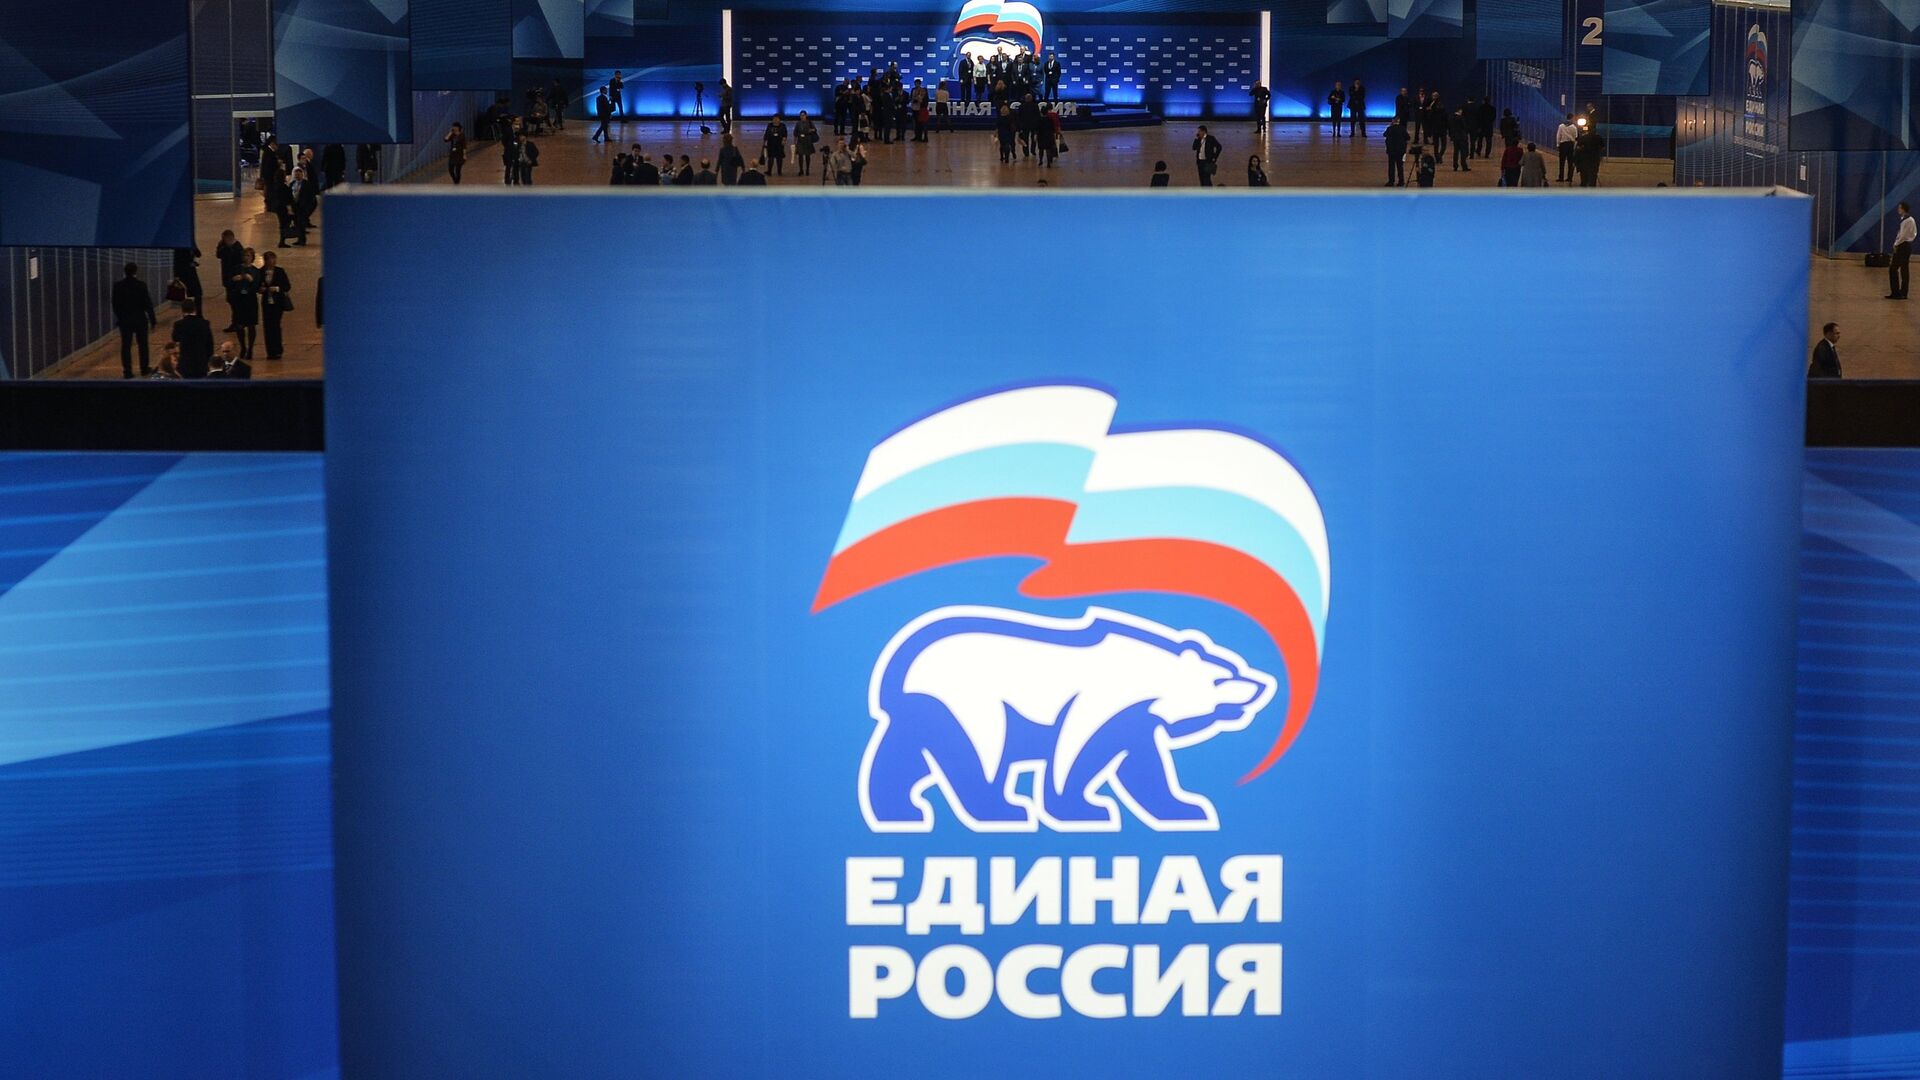 Более 7,6 тысяч человек подали заявки на праймериз "Единой России" 